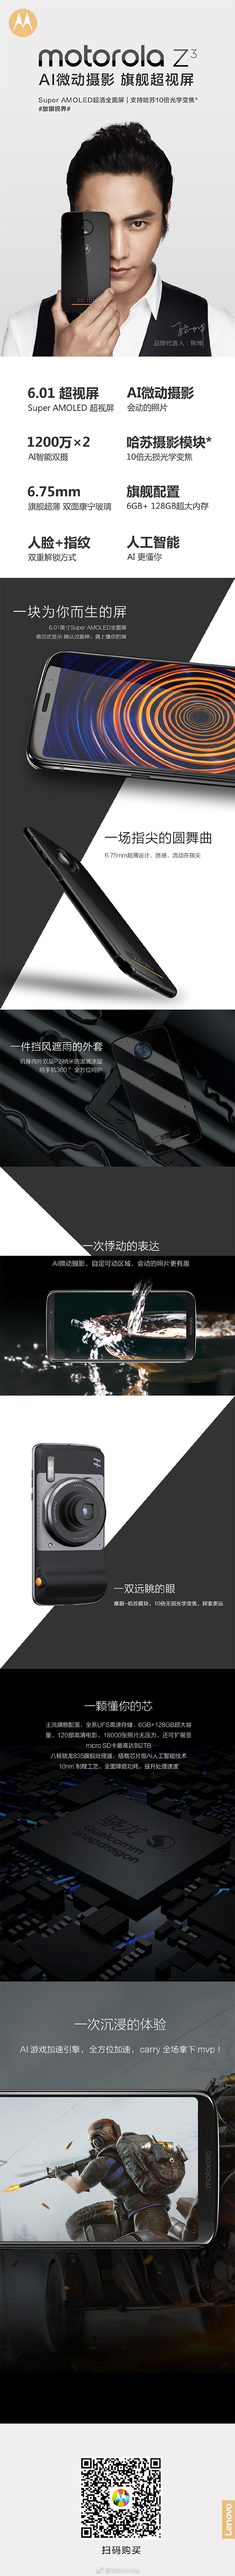 摩托罗拉手机Z3手机上中国发行版公布 骁龙835起步价3999元